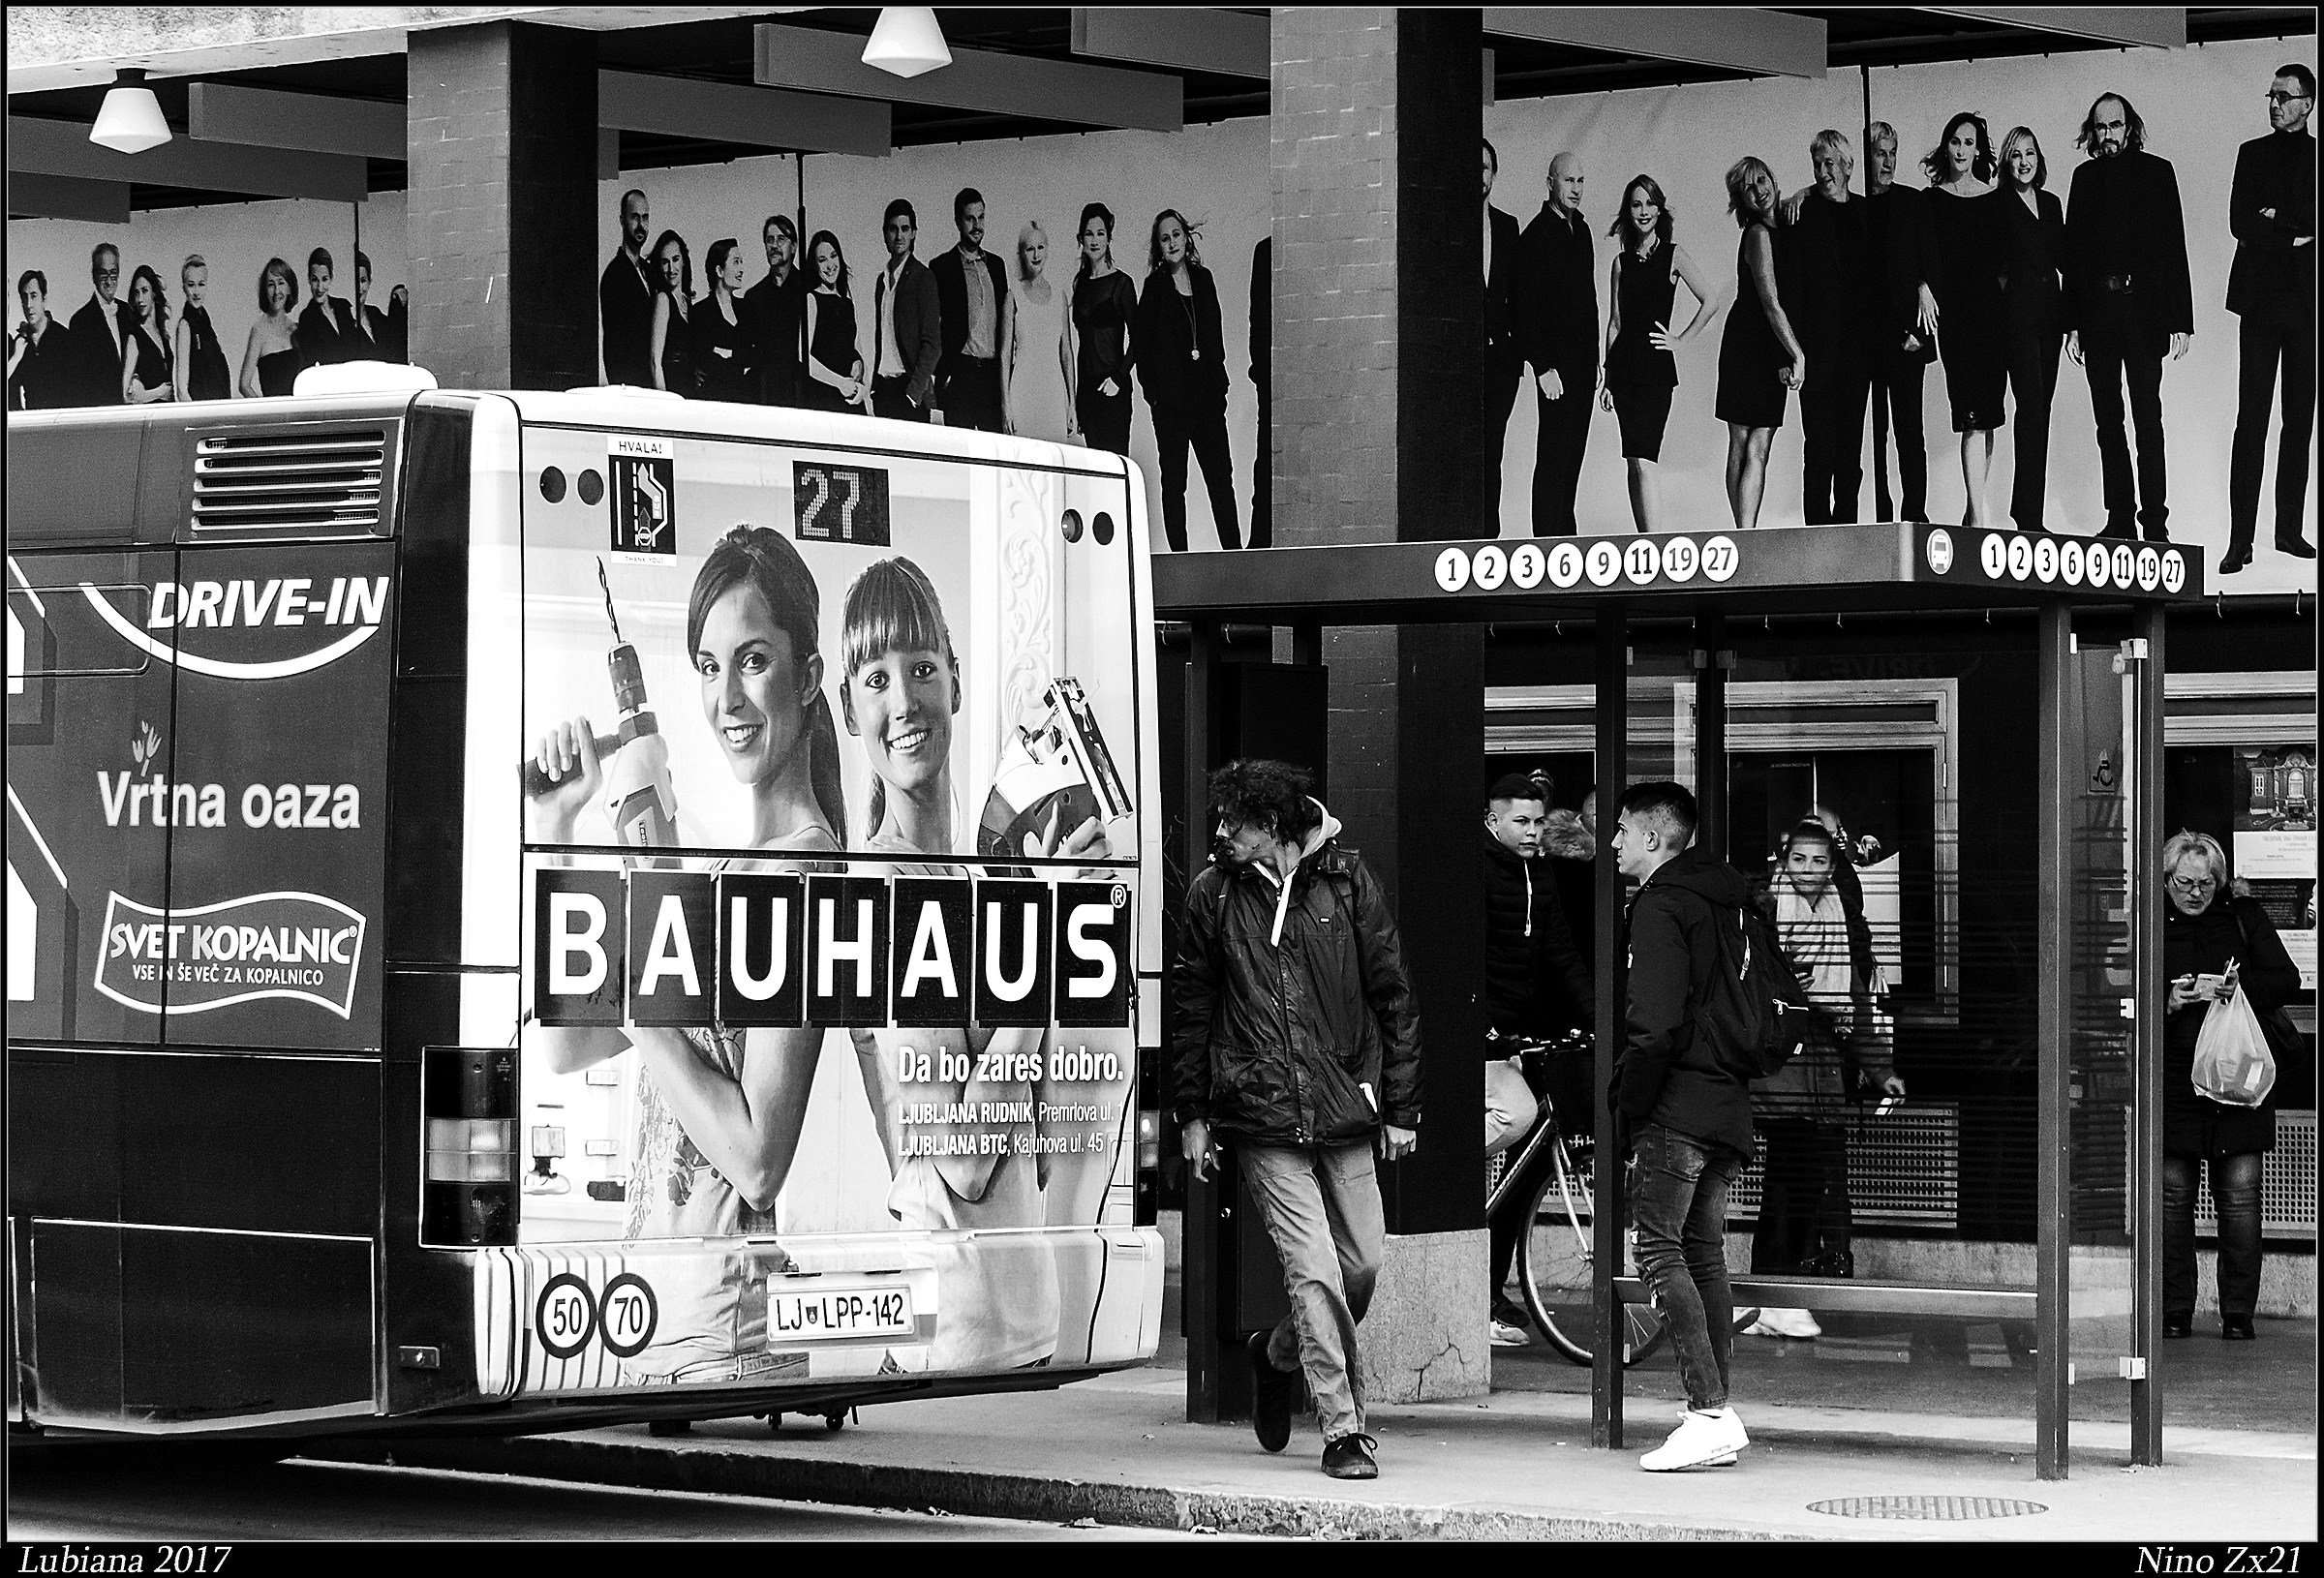 Bauhause...